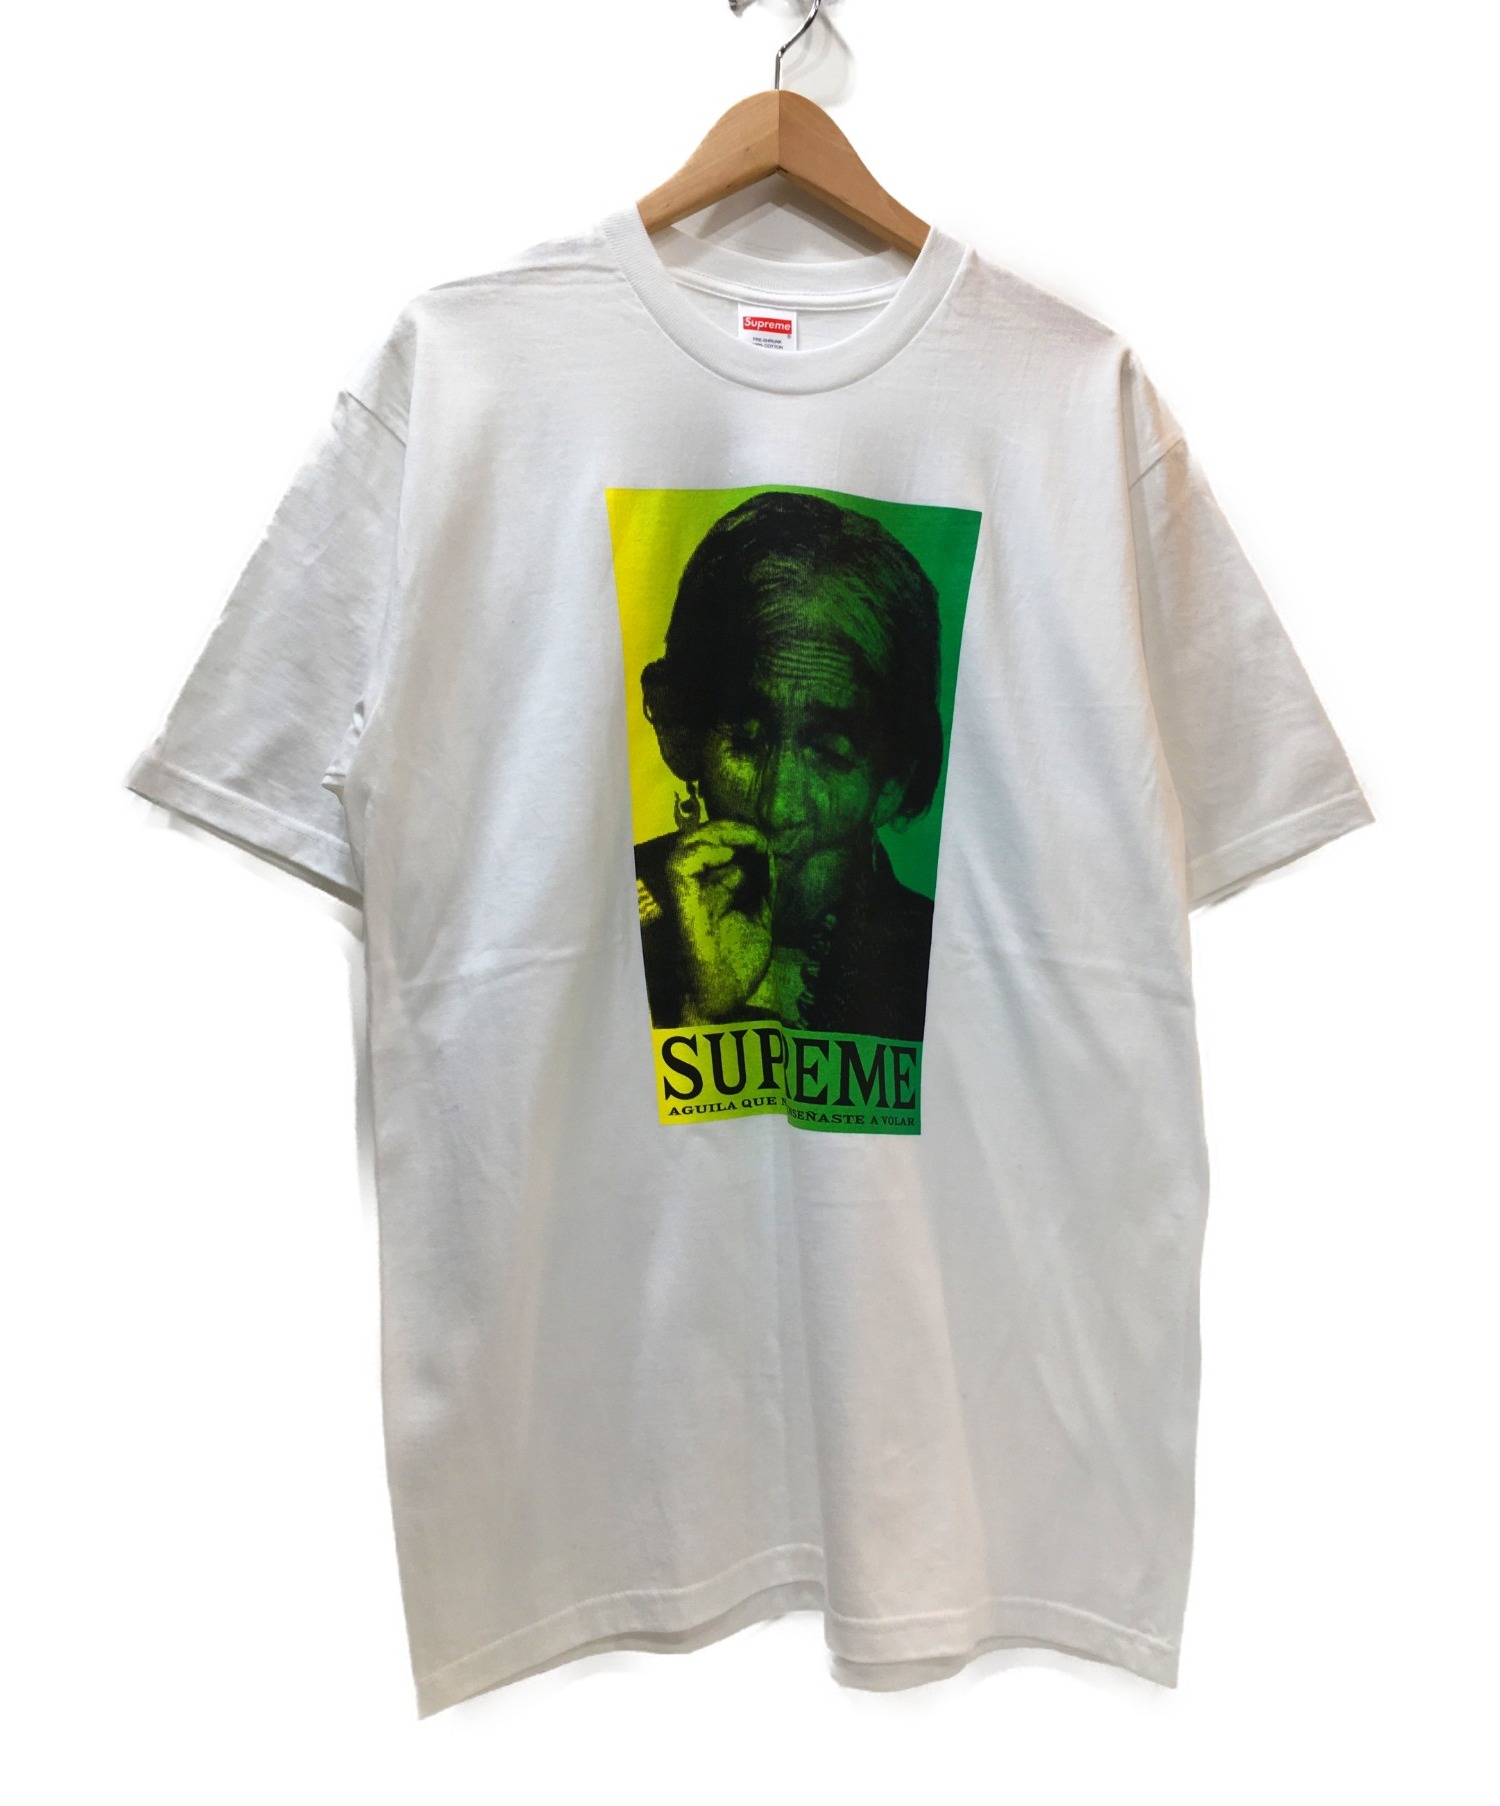 【中古・古着通販】Supreme (シュプリーム) プリントTシャツ ホワイト×グリーン サイズ:M 19AW WEEK17 AGUILA